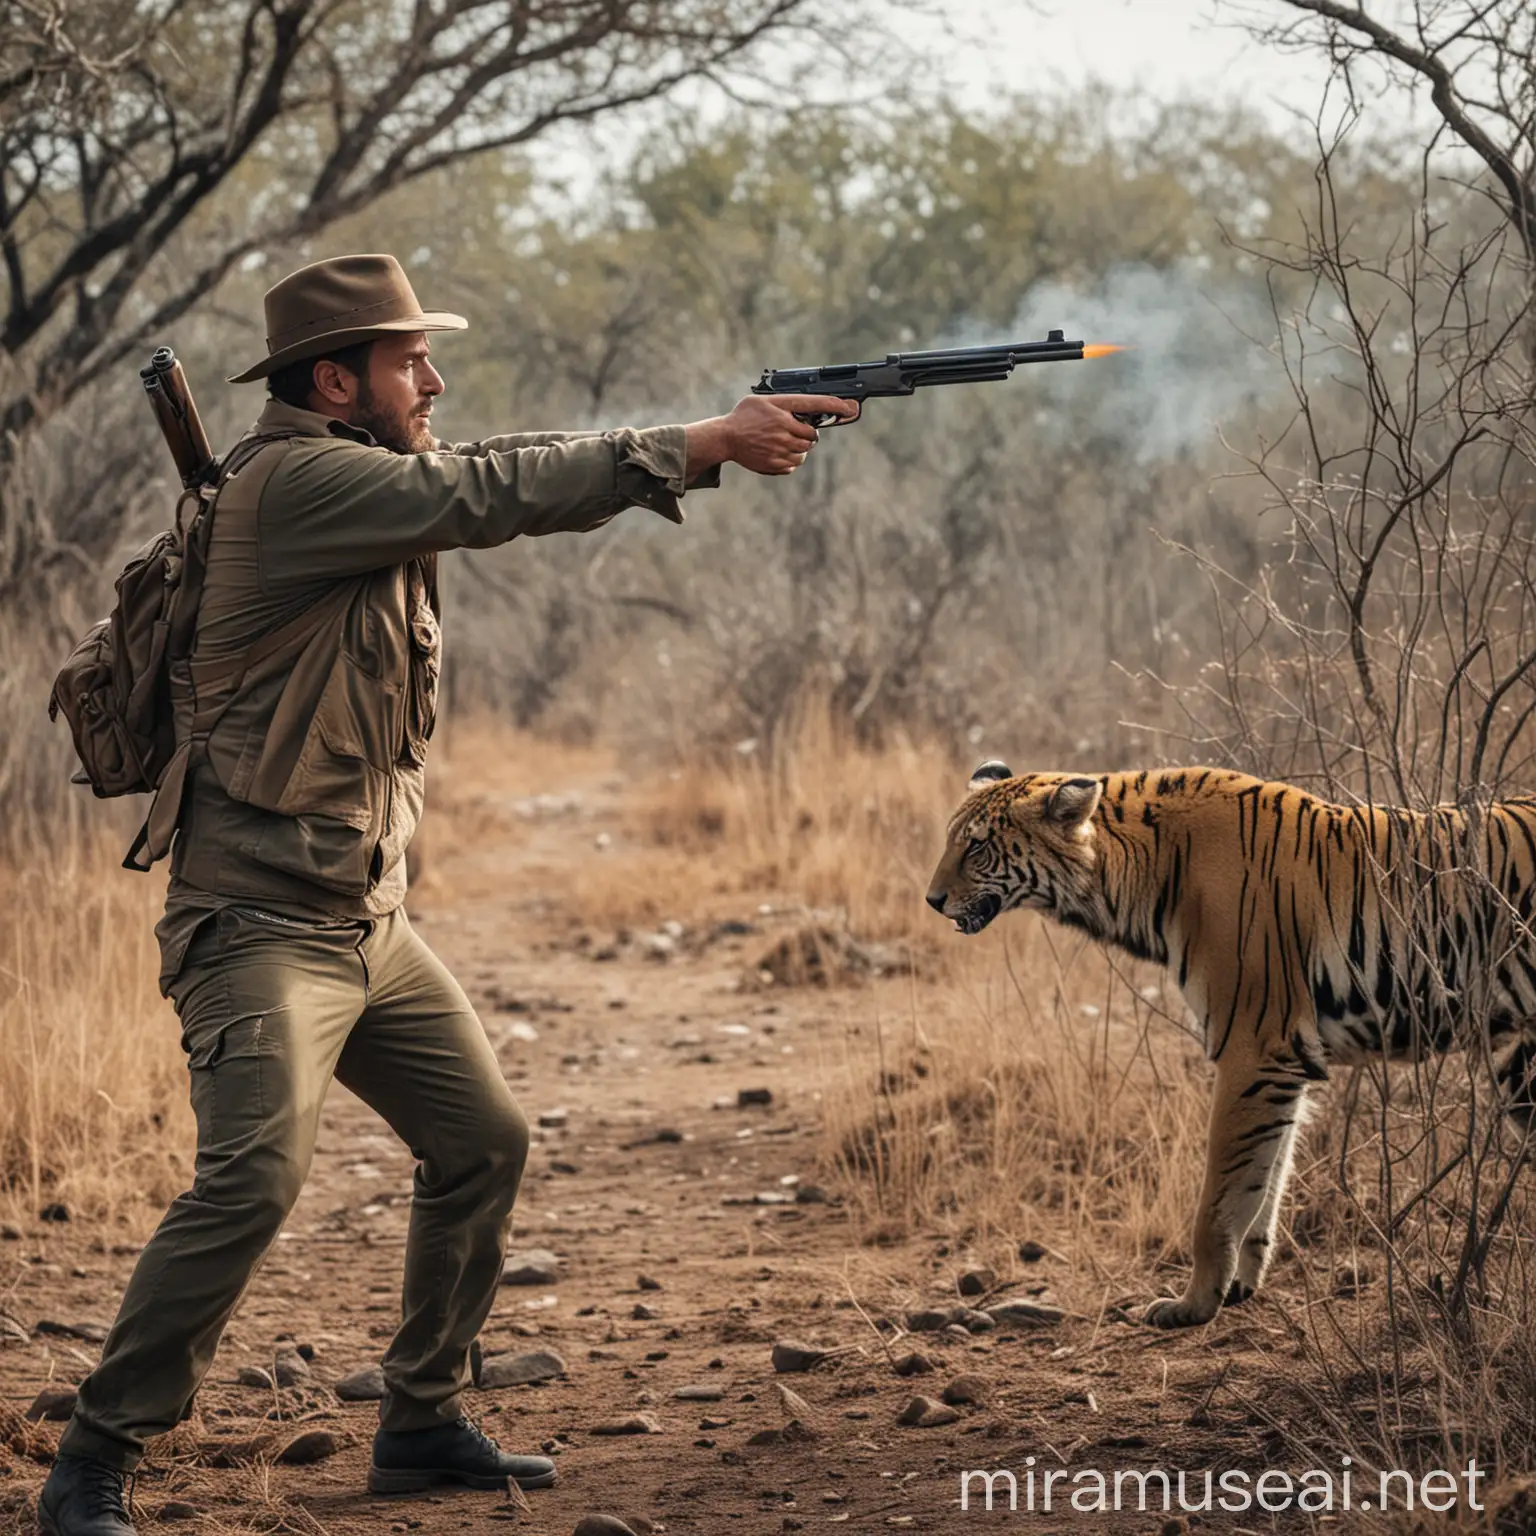 A man with a gun shooting a wild animal